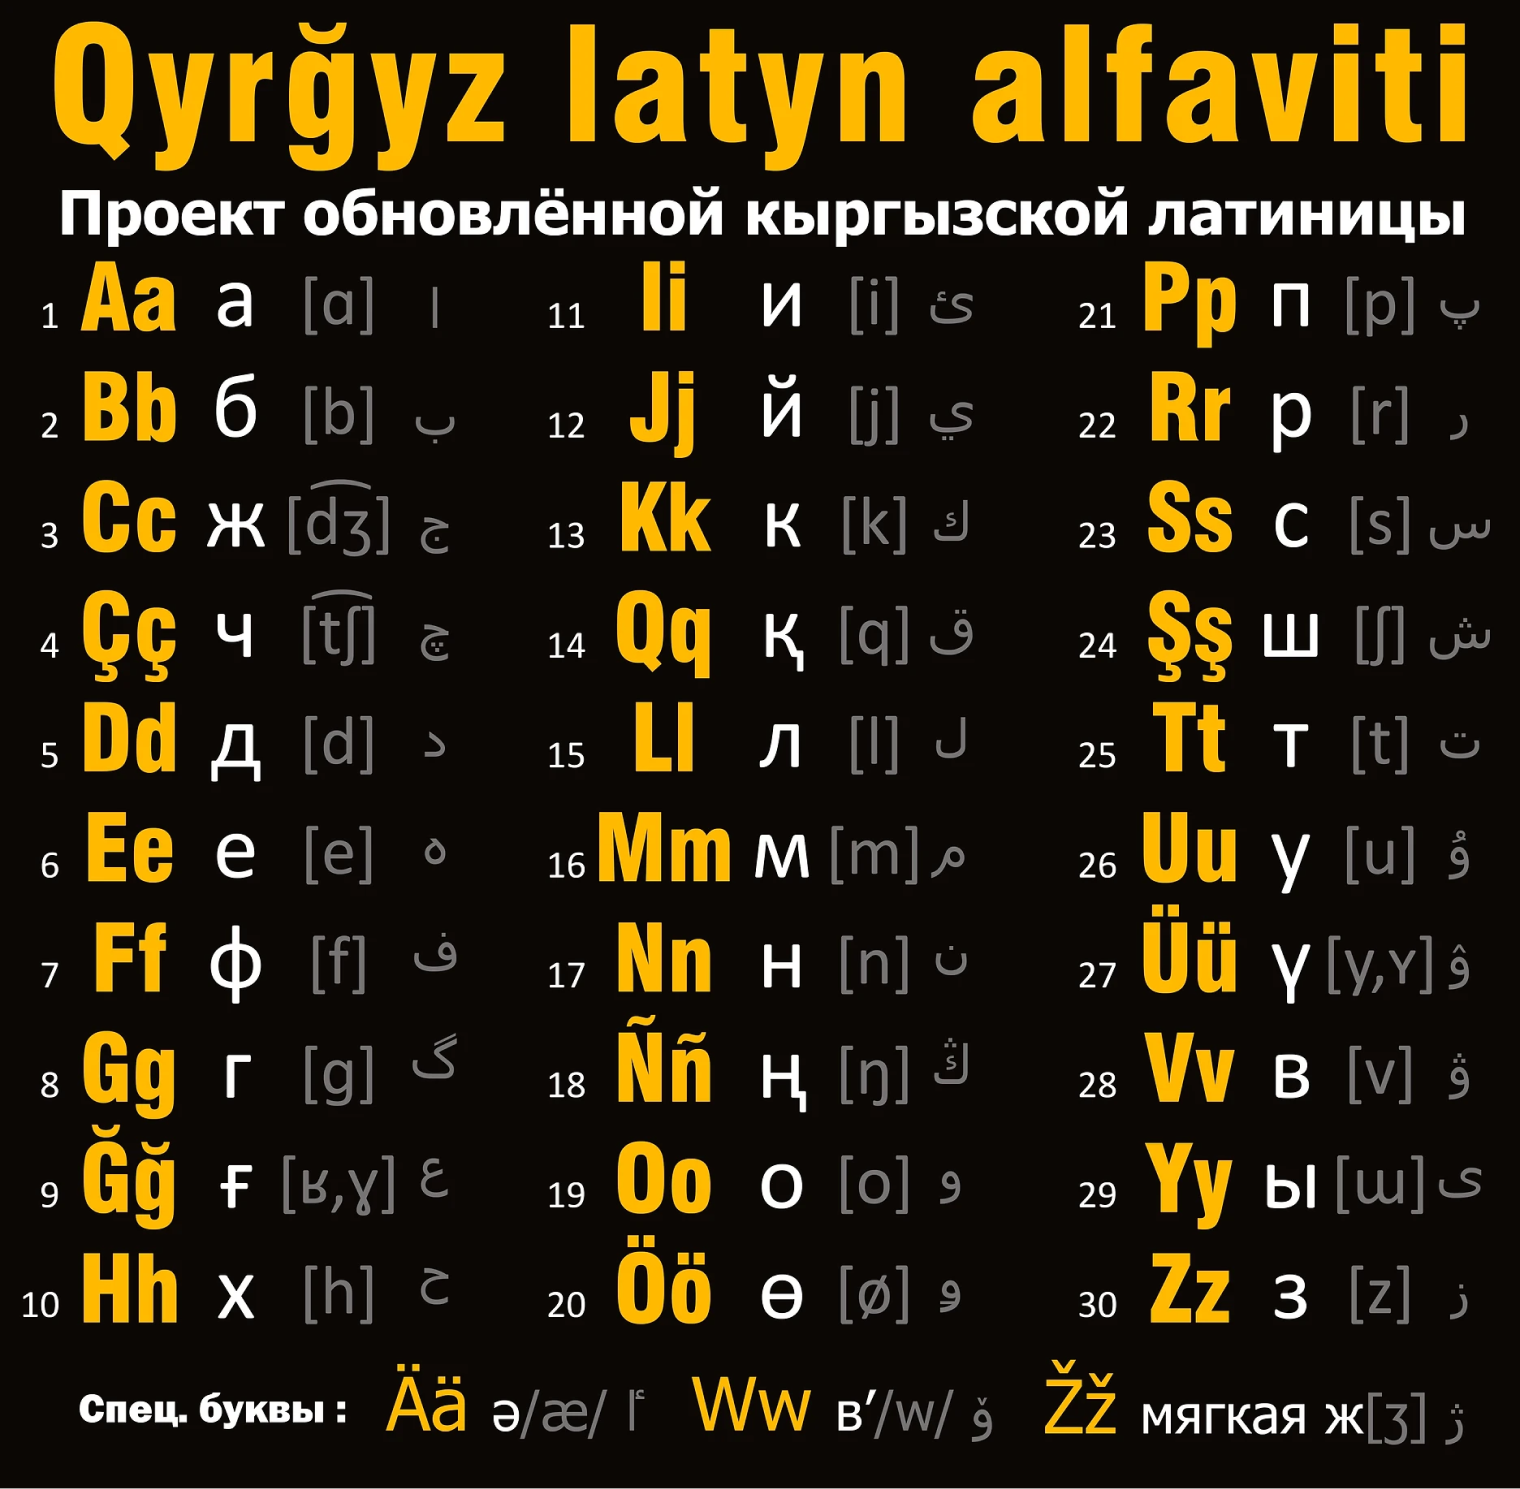 Написание букв и звуков киргизского языка кириллицей и латиницей. Источник: qyrgyz.com